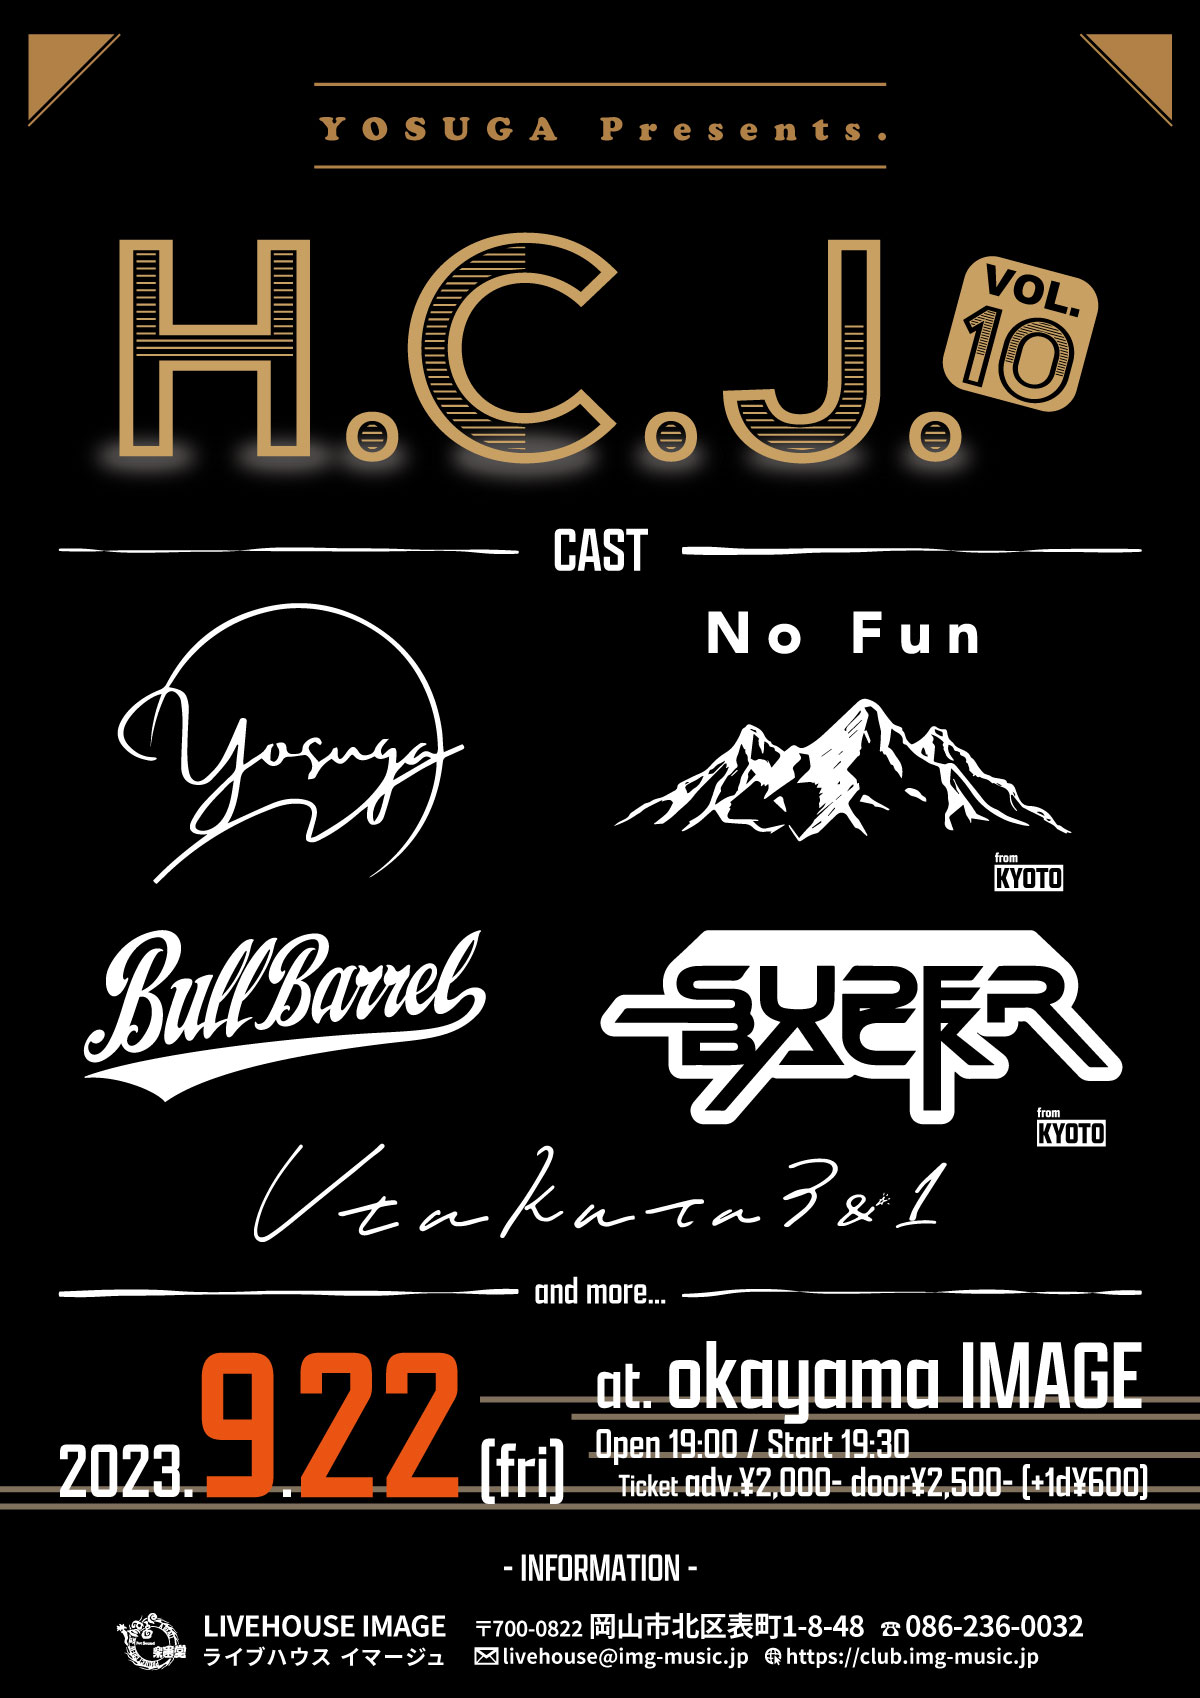 Yosuga Presents H.C.J. vol10